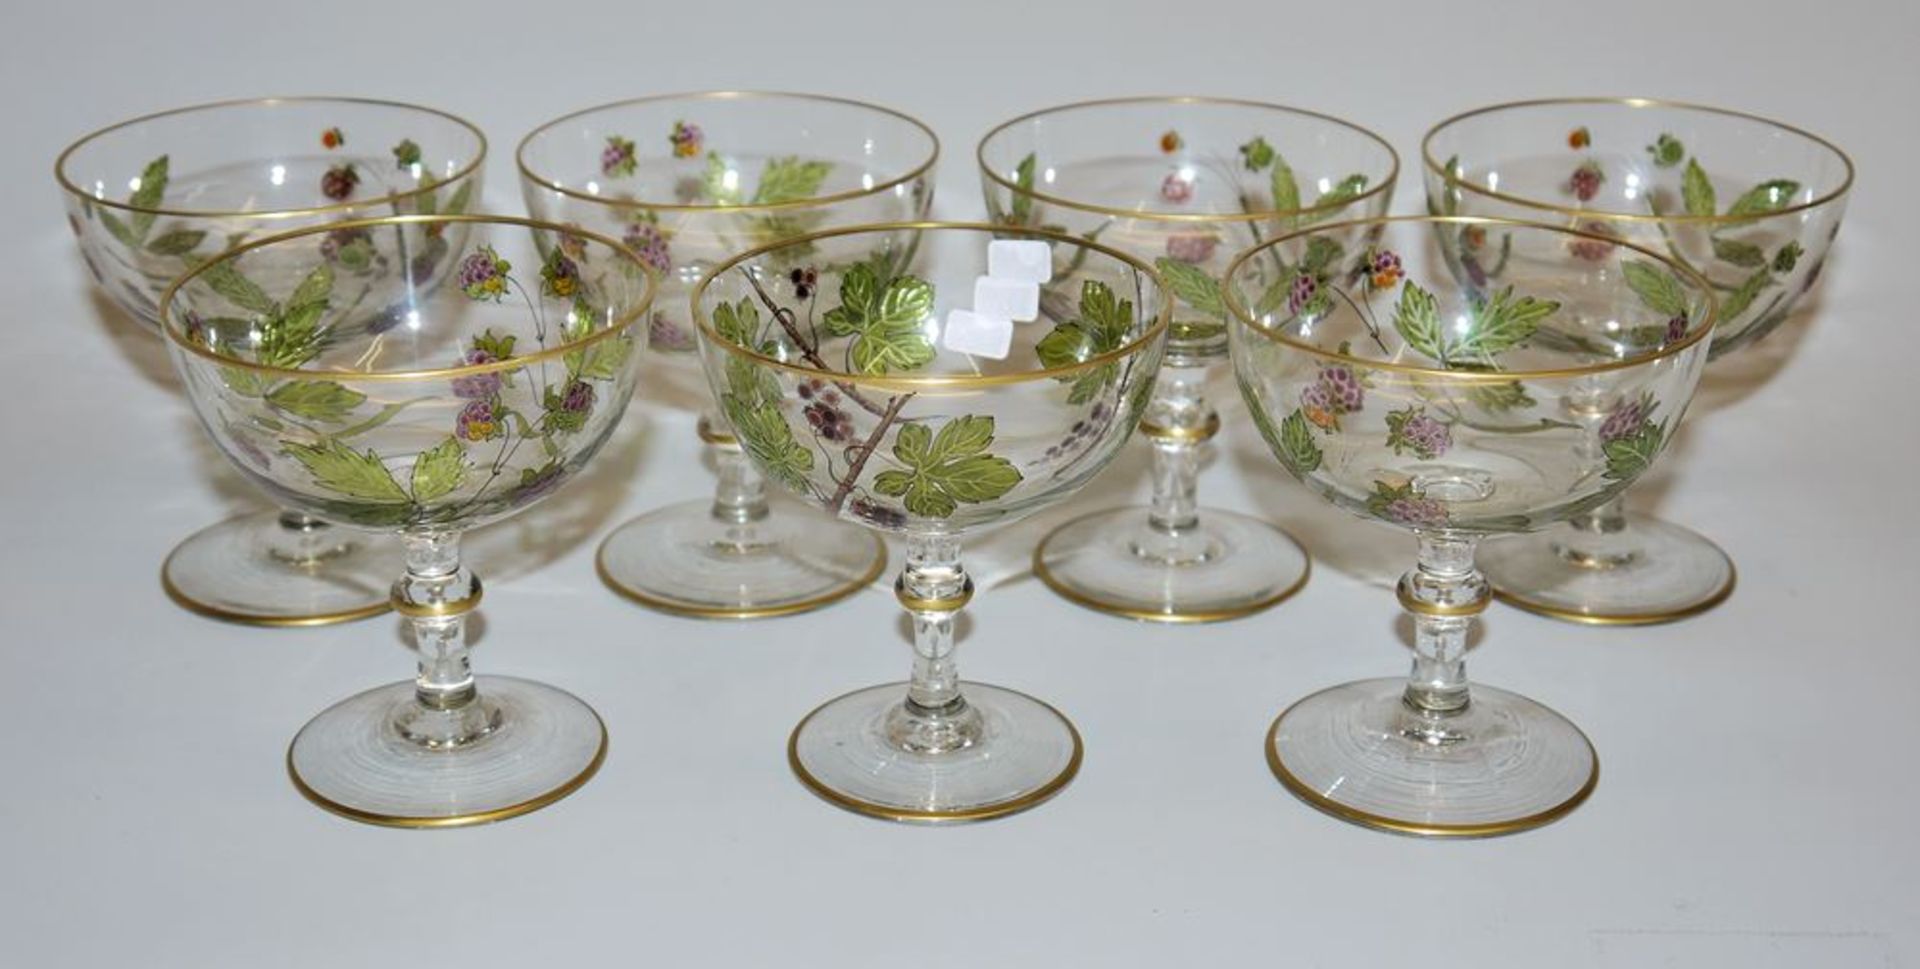 6 plus 1 Art Nouveau sorbet bowls, glass hand-painted